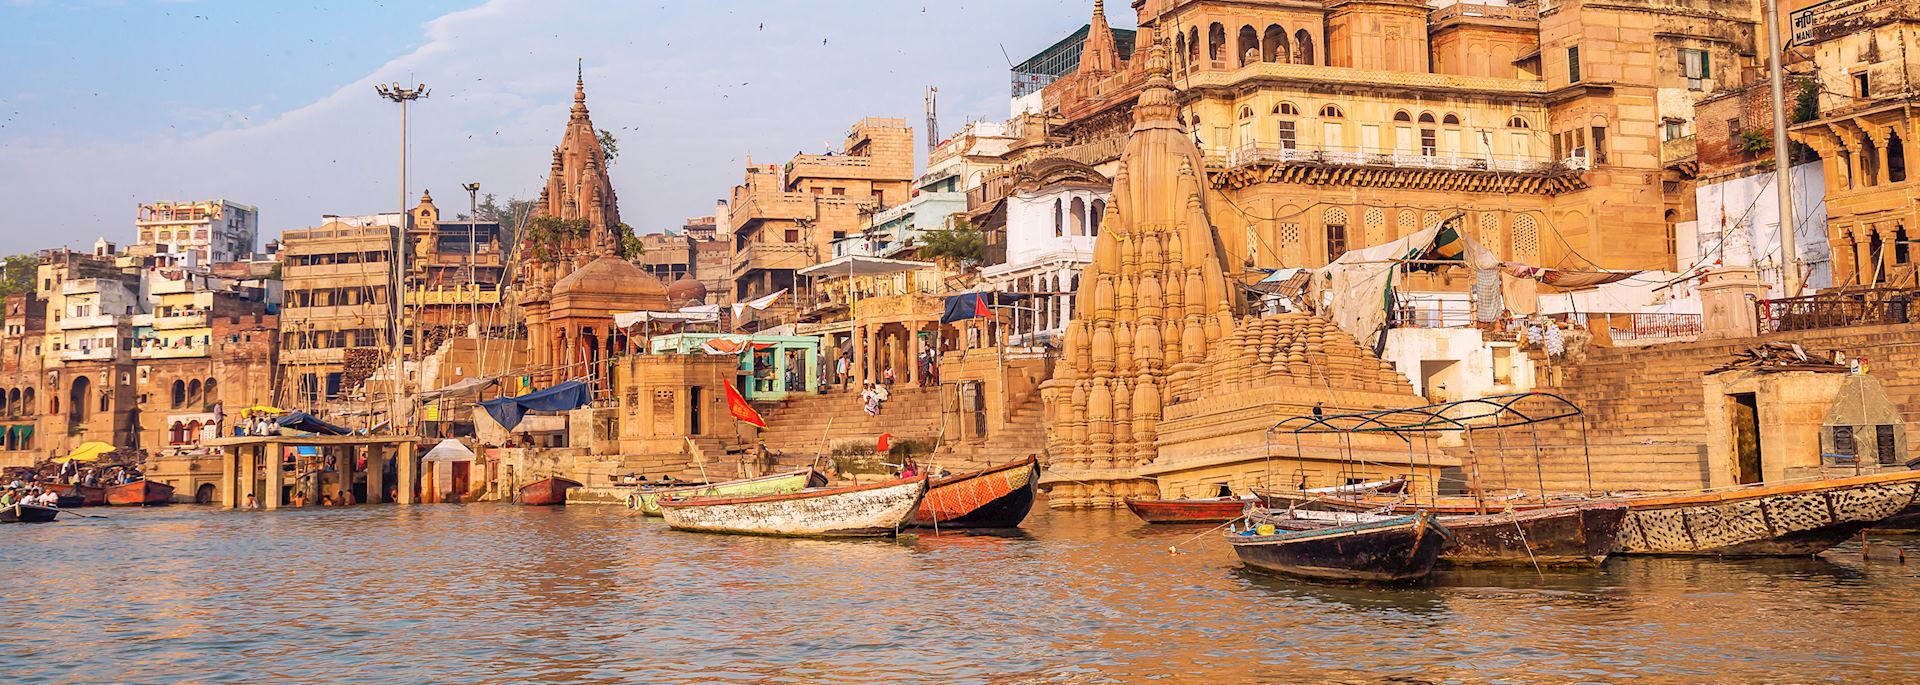 The holy city of Varanasi, India